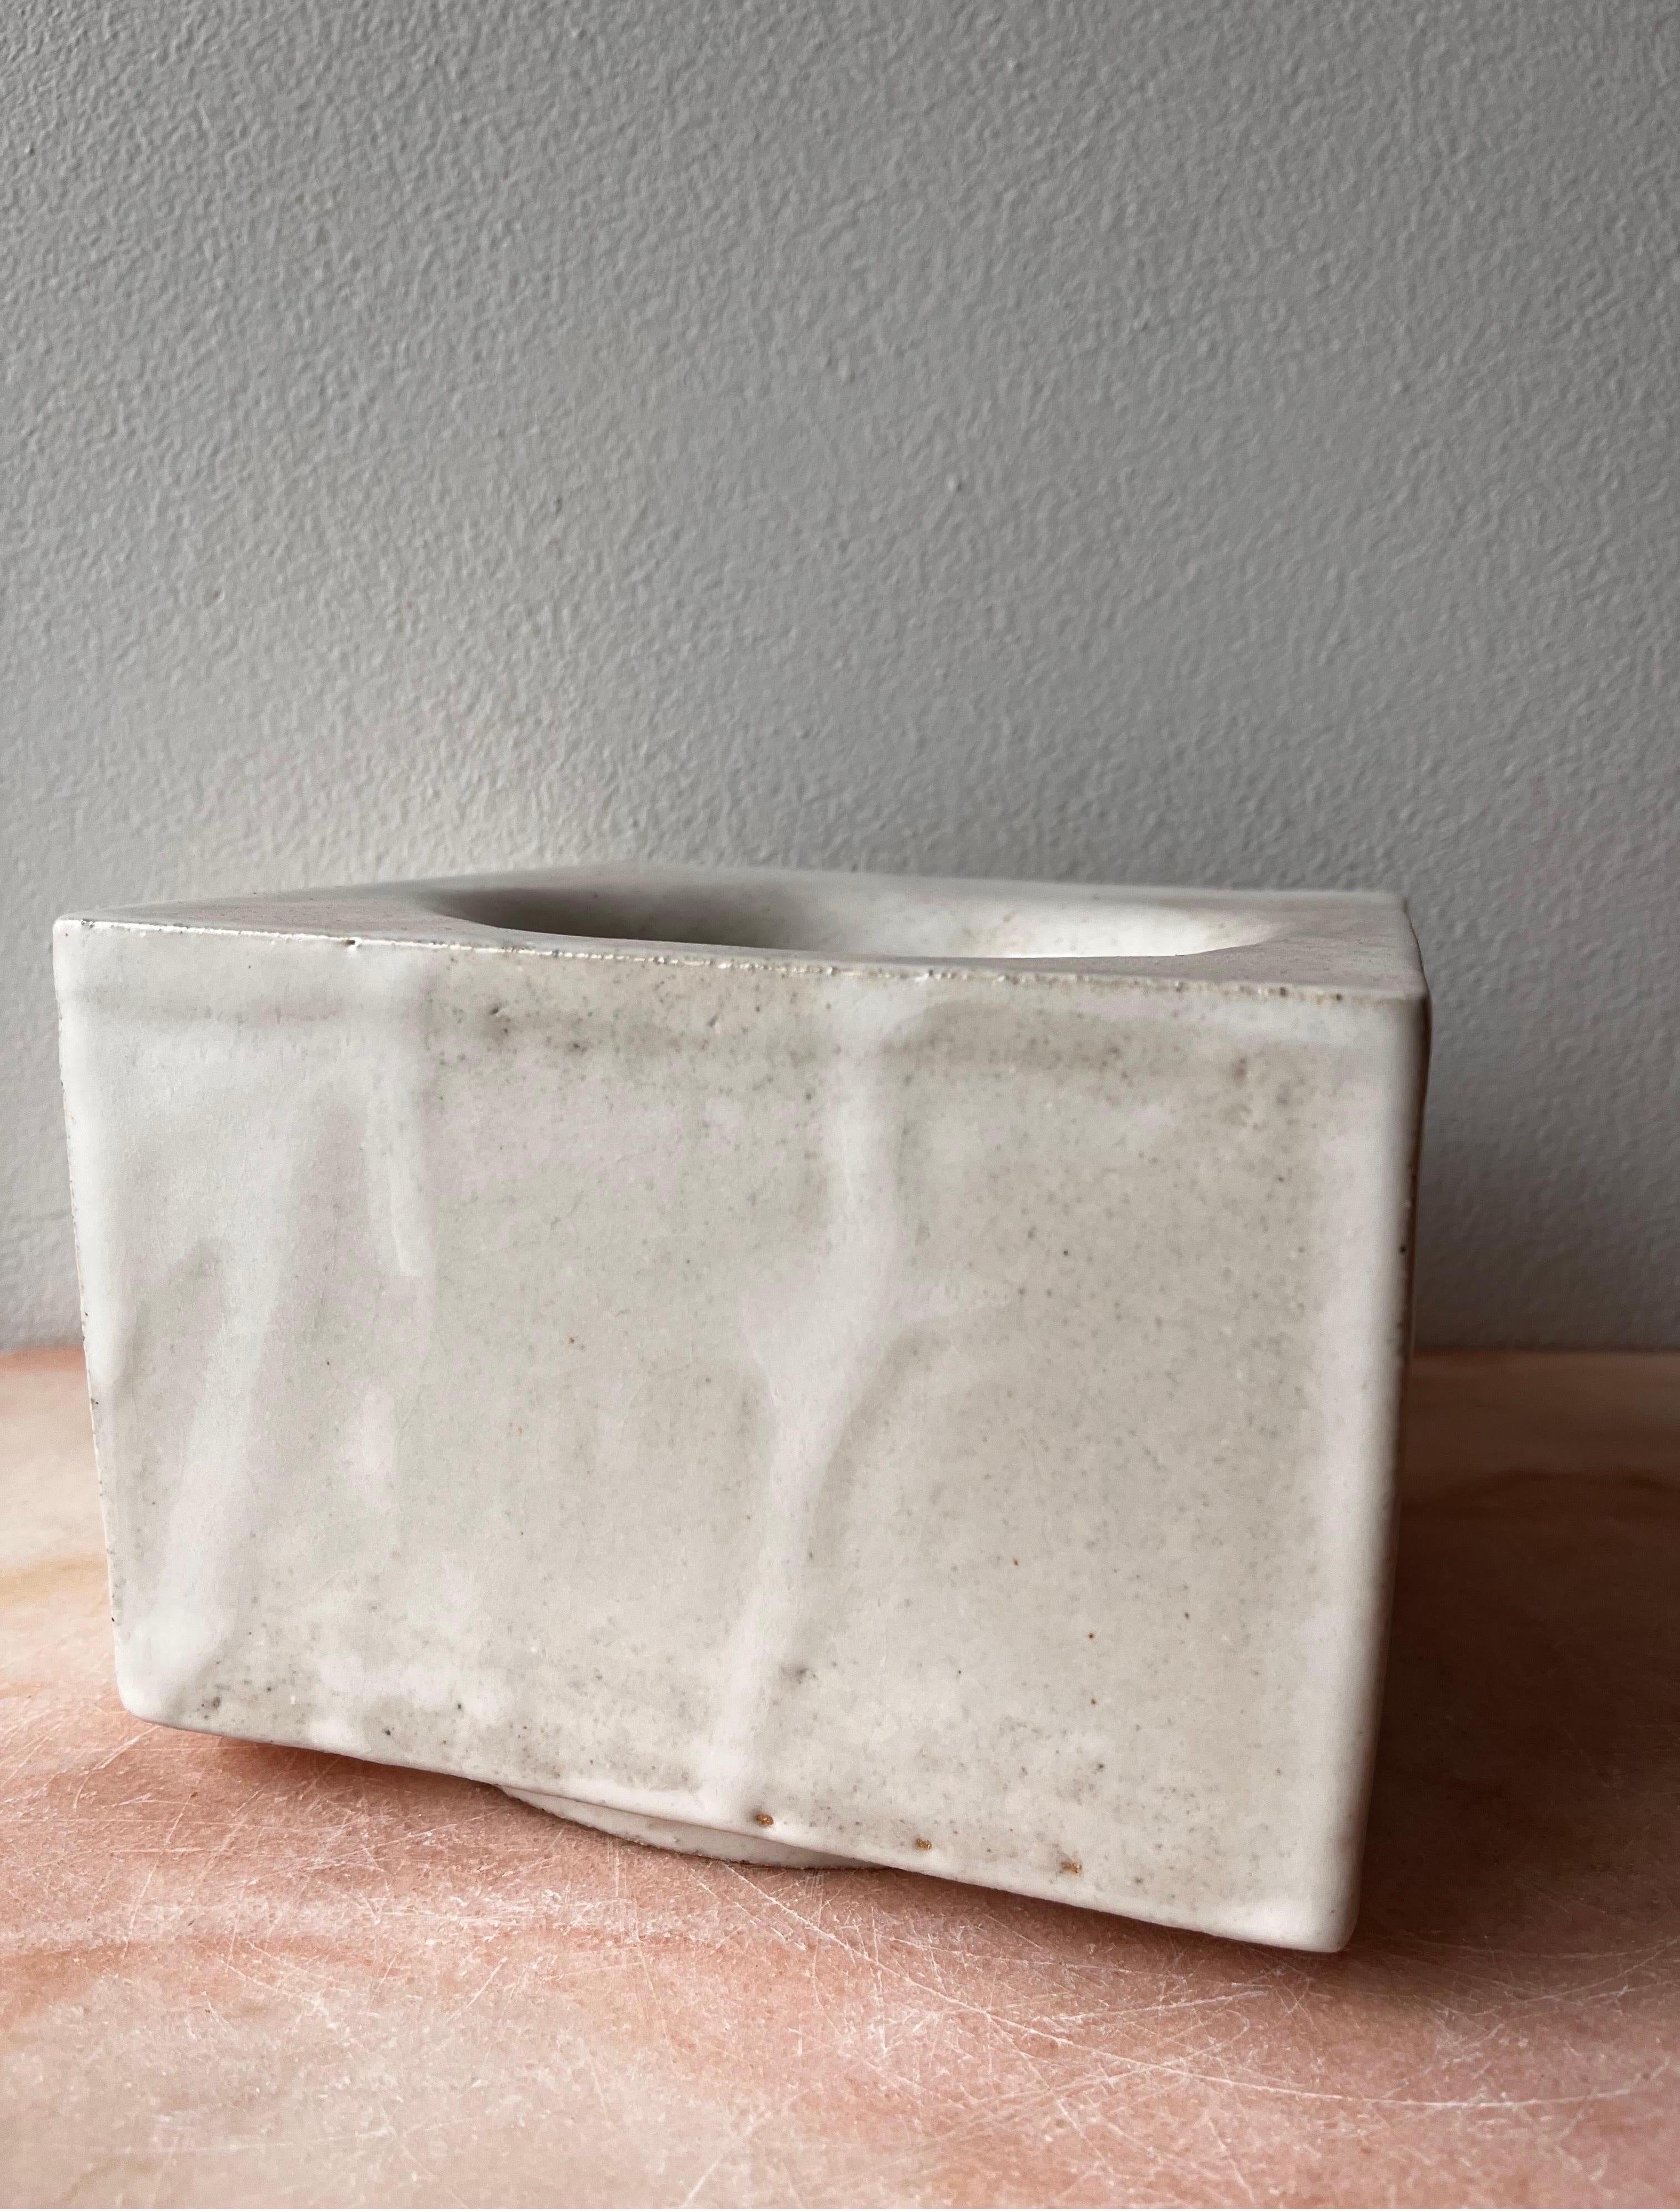 Diese handgefertigte Schale ist hohl, besteht aus sieben Steinzeugplatten und ist in mattem Weiß glasiert, wobei Tropfen und Überlappungen einbezogen sind und einzigartig sind. Es ist lebensmittelecht, obwohl es für dekorative Zwecke bestimmt ist.